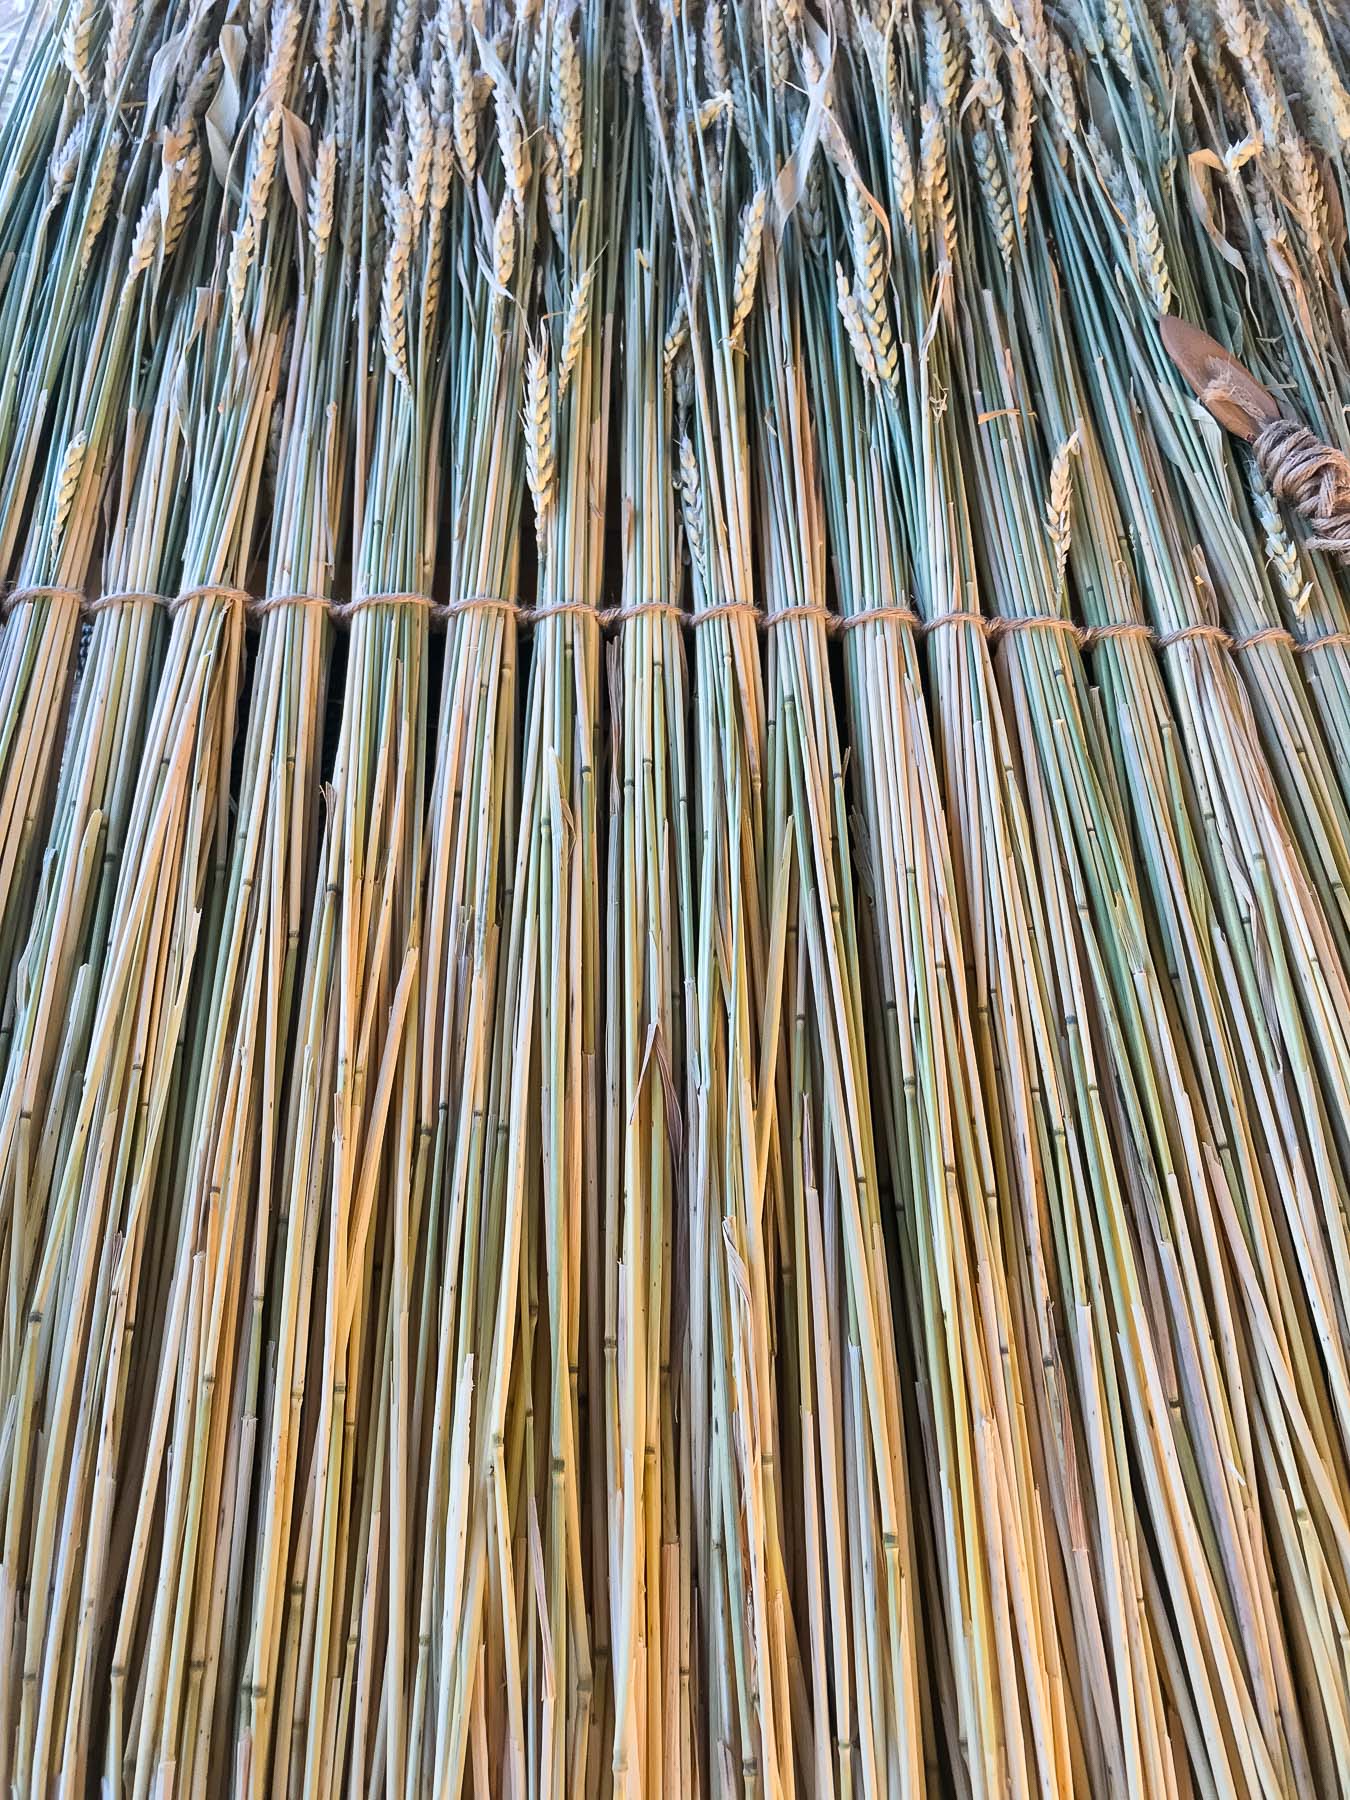 Wheat stalks on toba weaving frame. Photo by Caro Telfer.